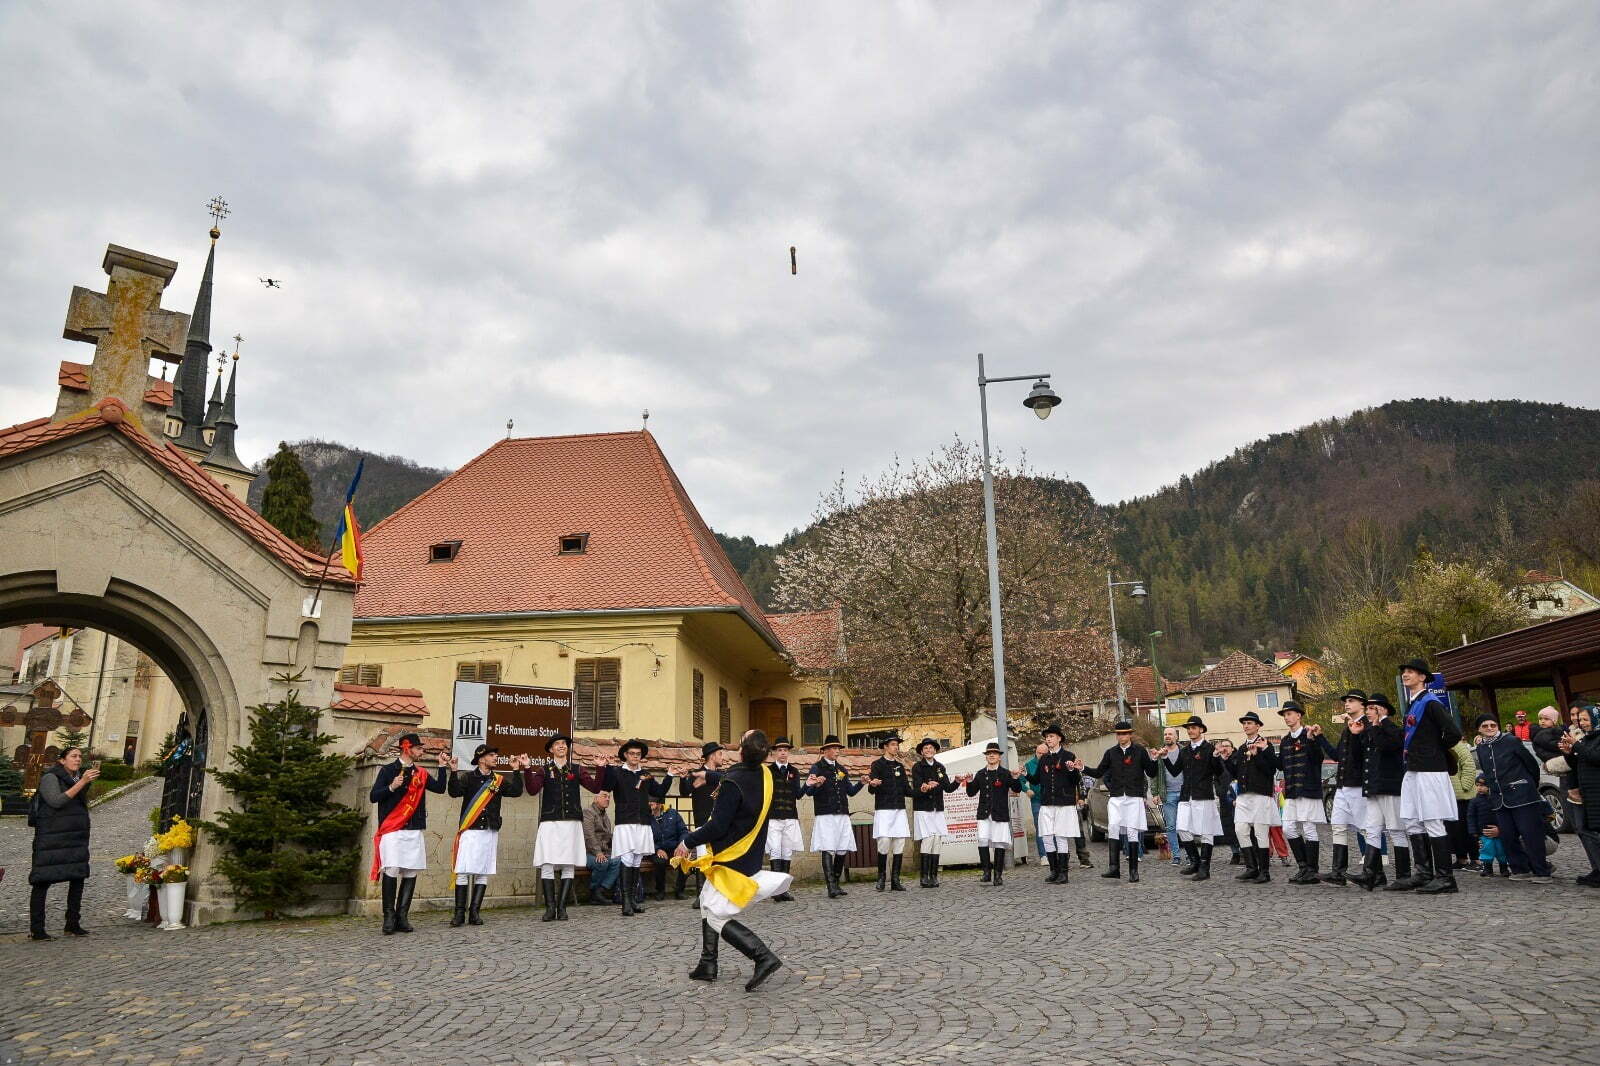 FOTO: Aruncatul în țol, unul dintre cele mai vechi și spectaculoase obiceiuri ale Junilor Tineri din Șchei, a adunat brașovenii în Piata Unirii